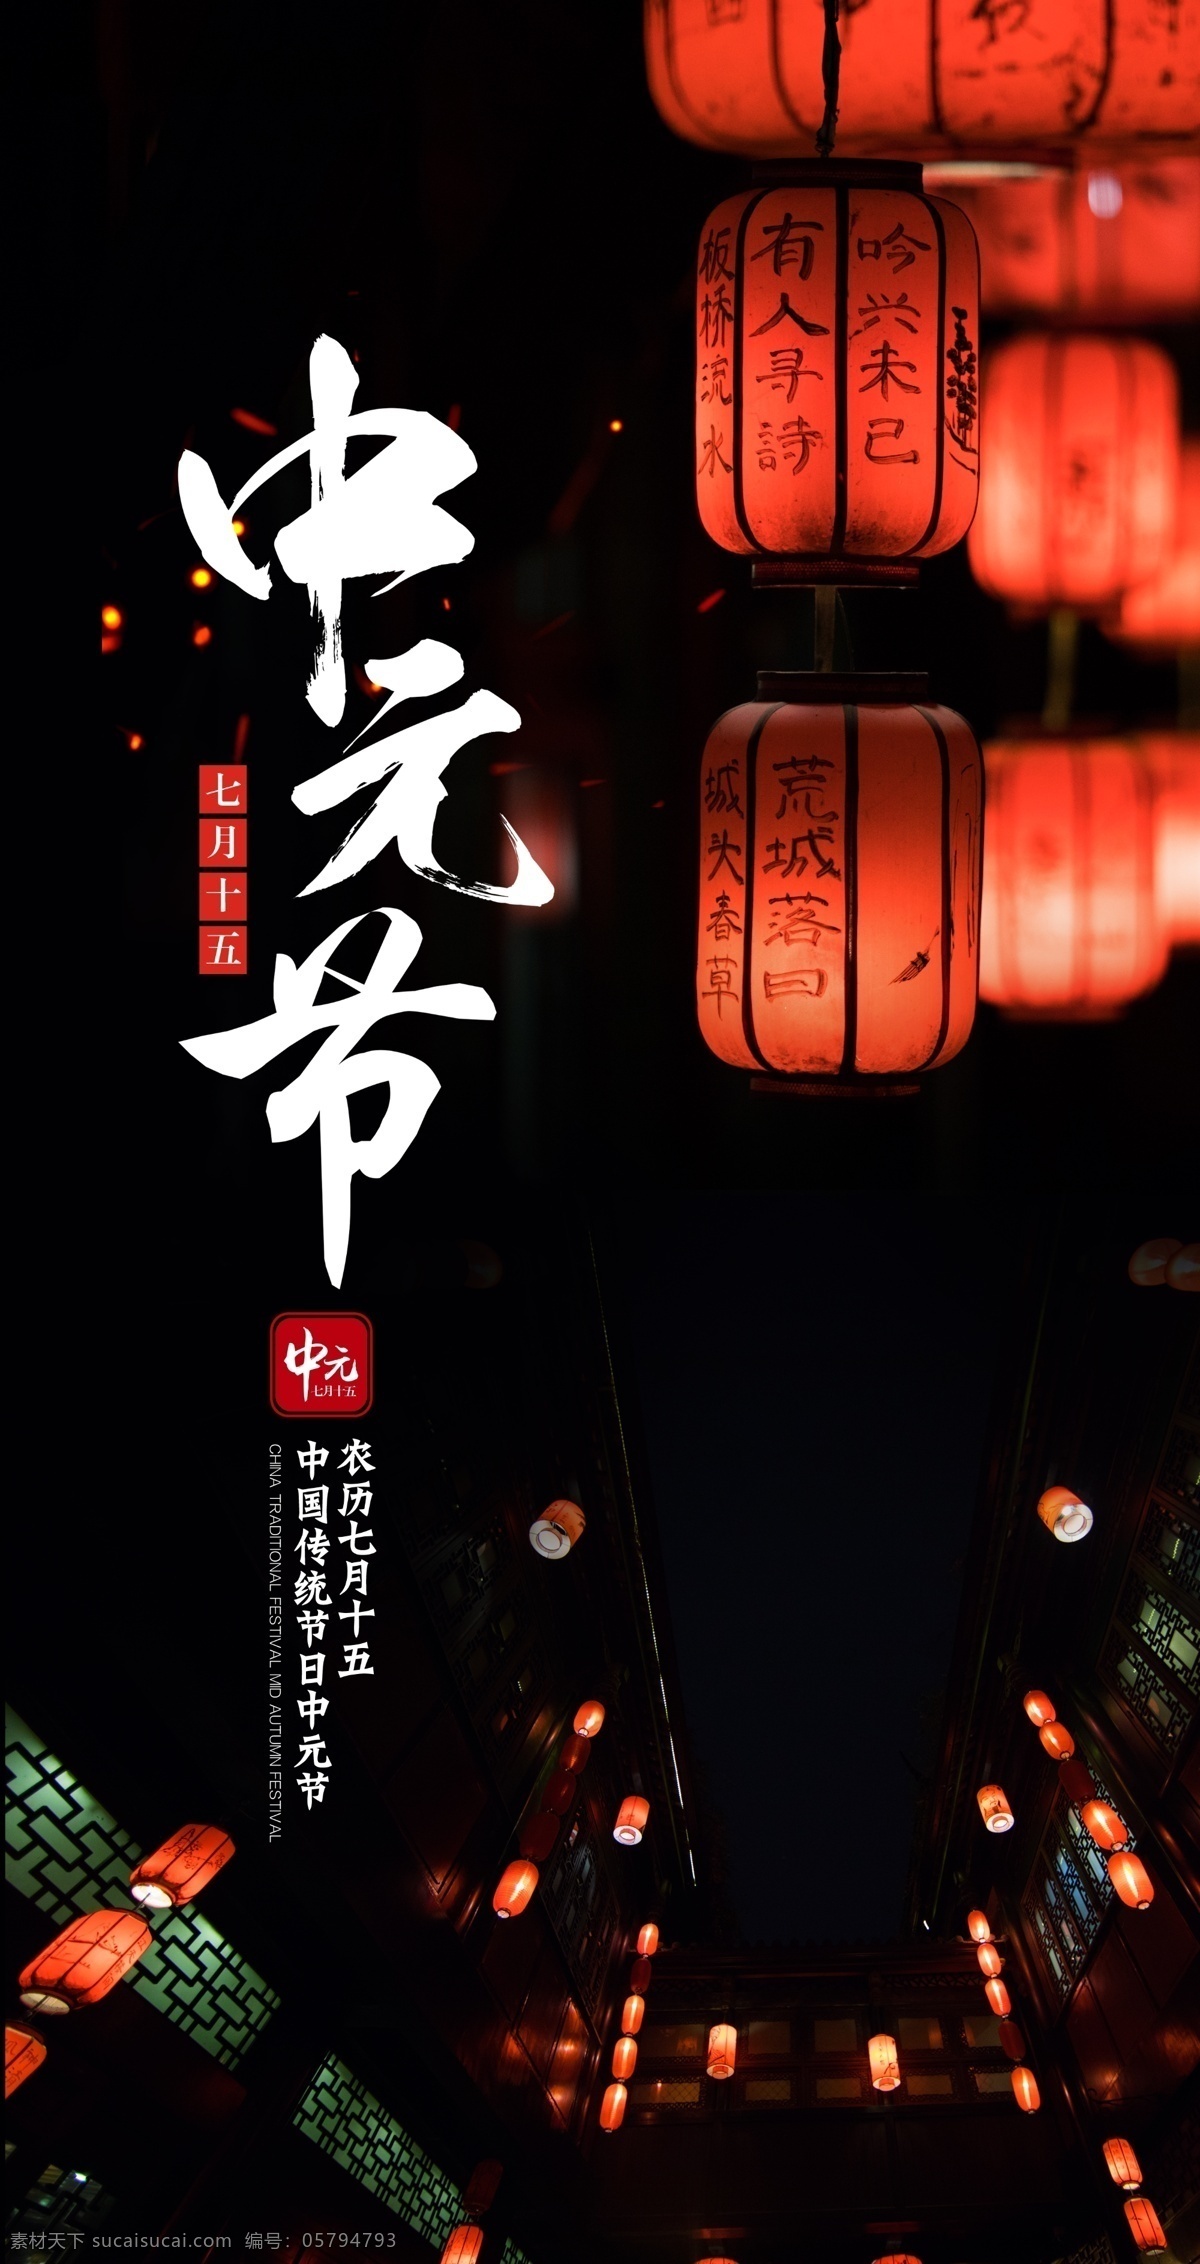 中元节 传统 节假日 黑色背景 中国风灯笼 文化艺术 传统文化